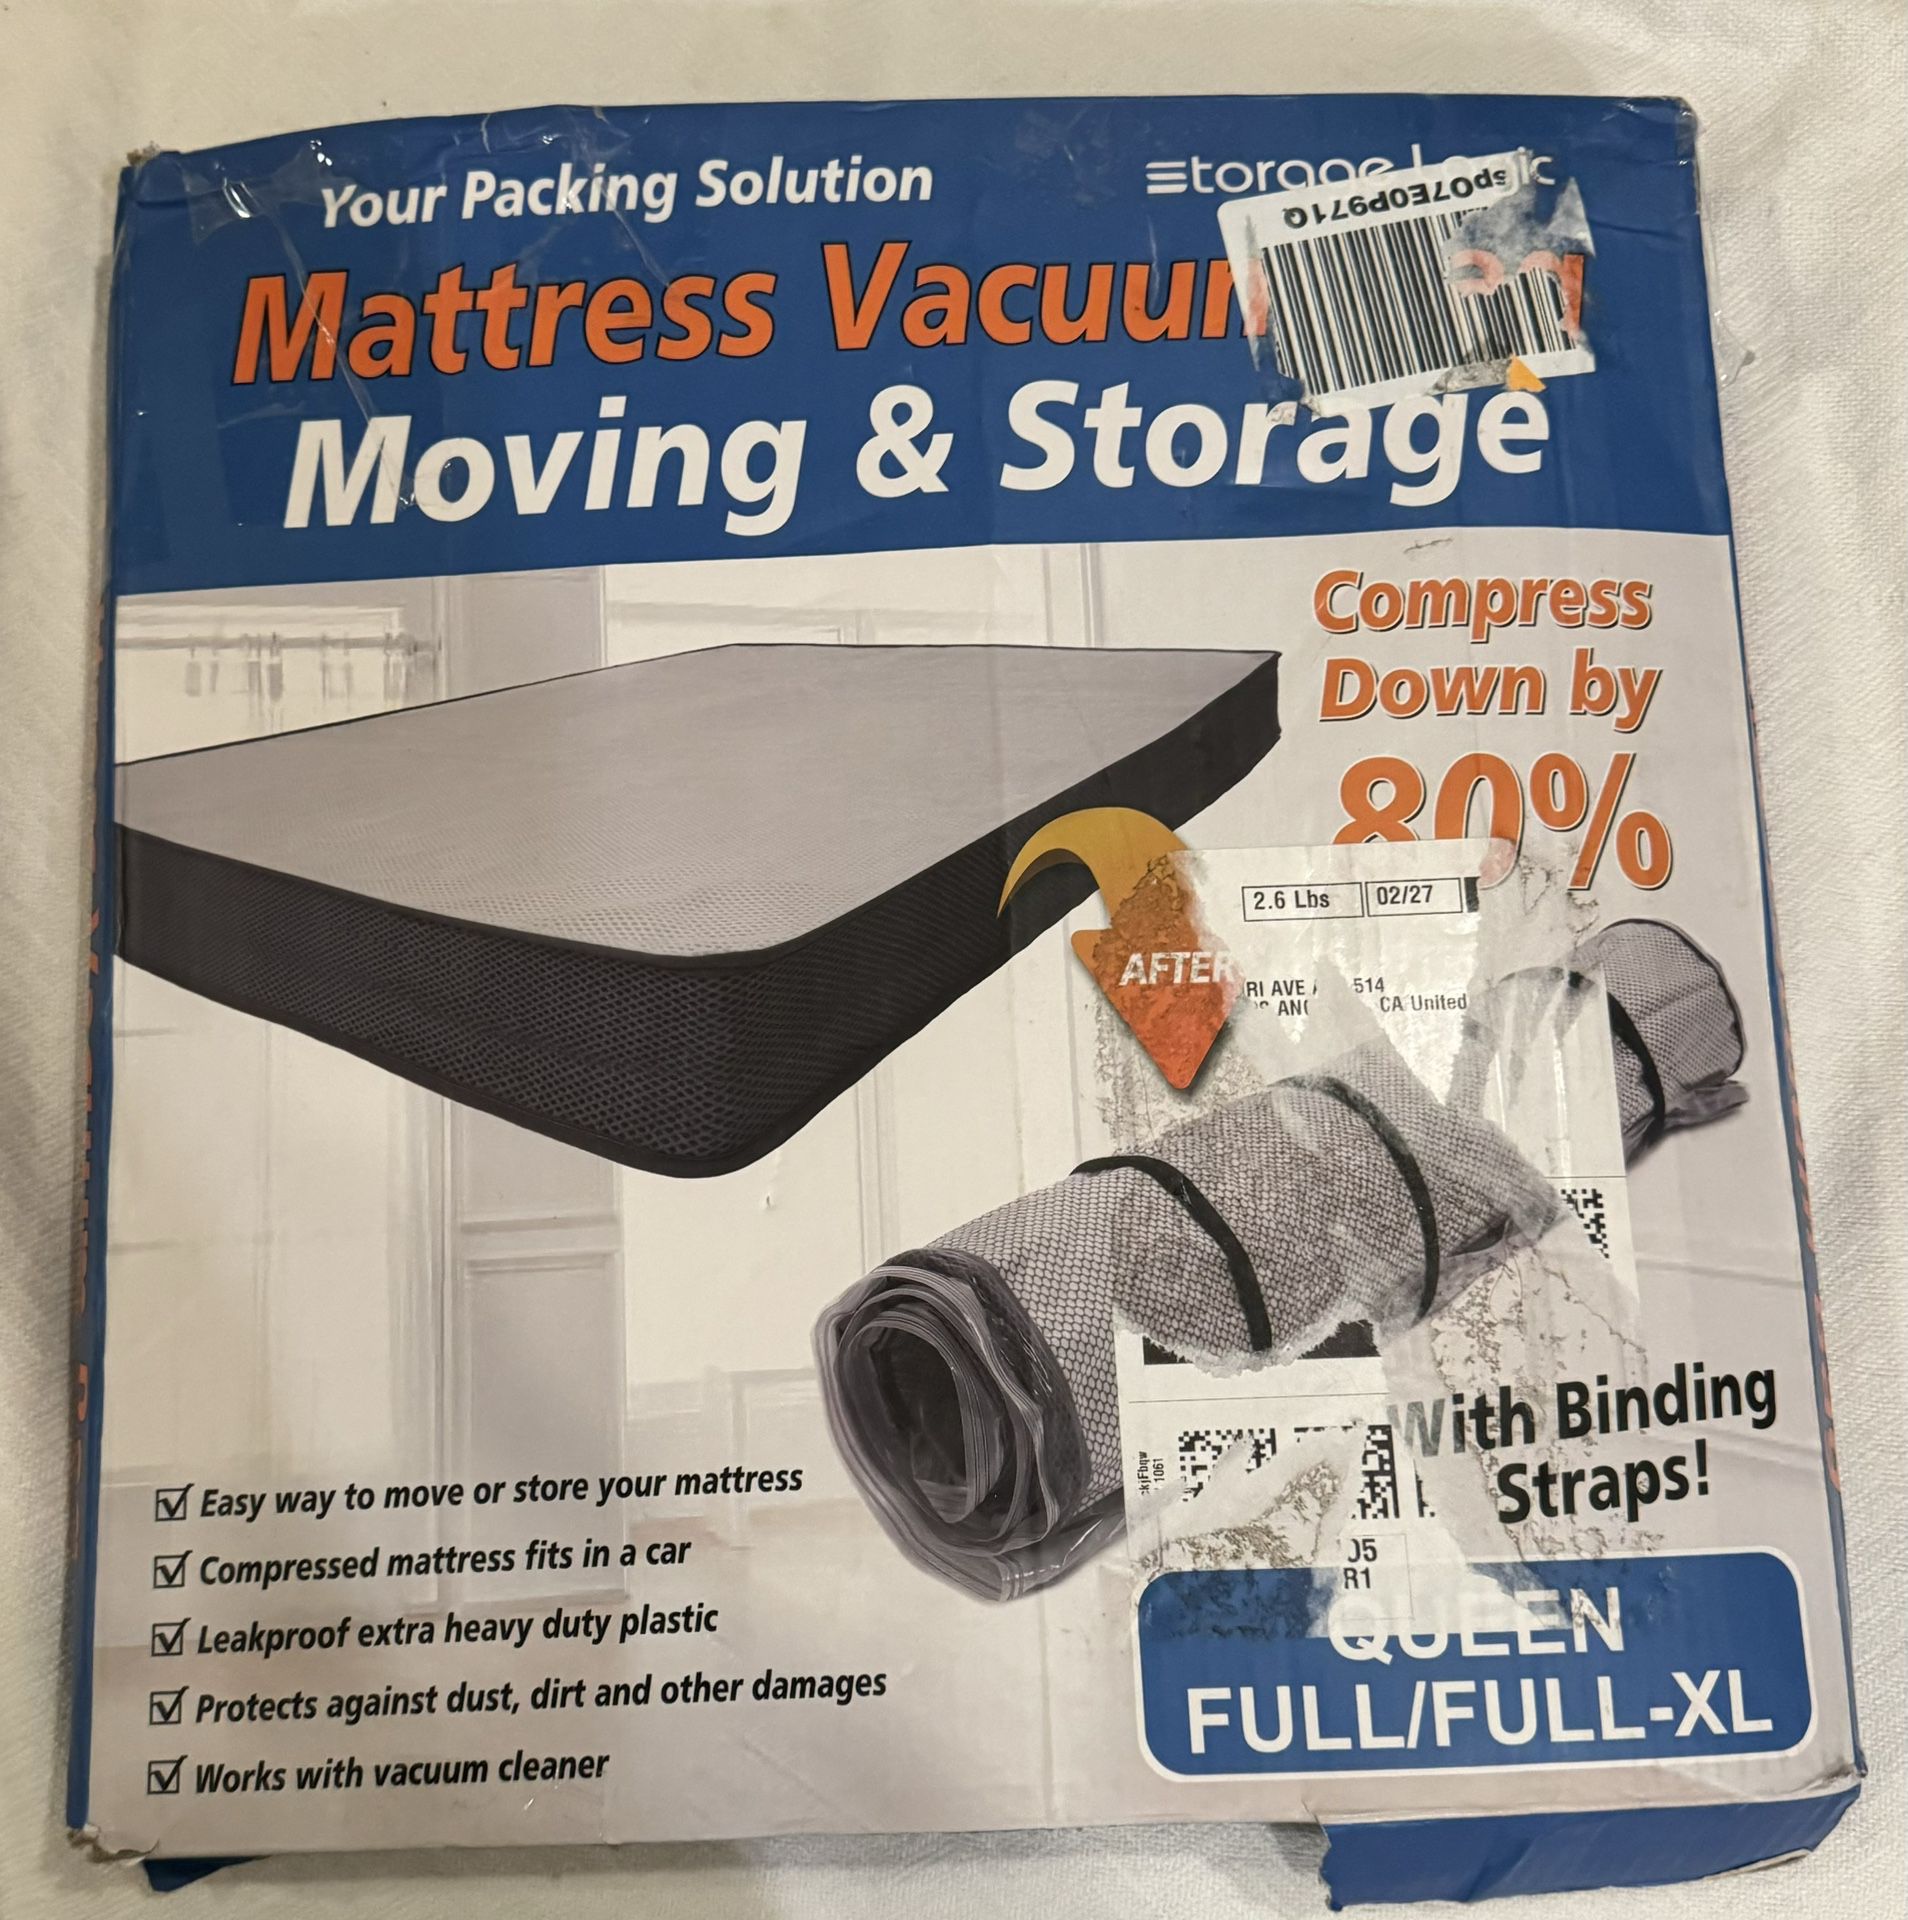 Mattress Vacuum Moving & Storage Bag